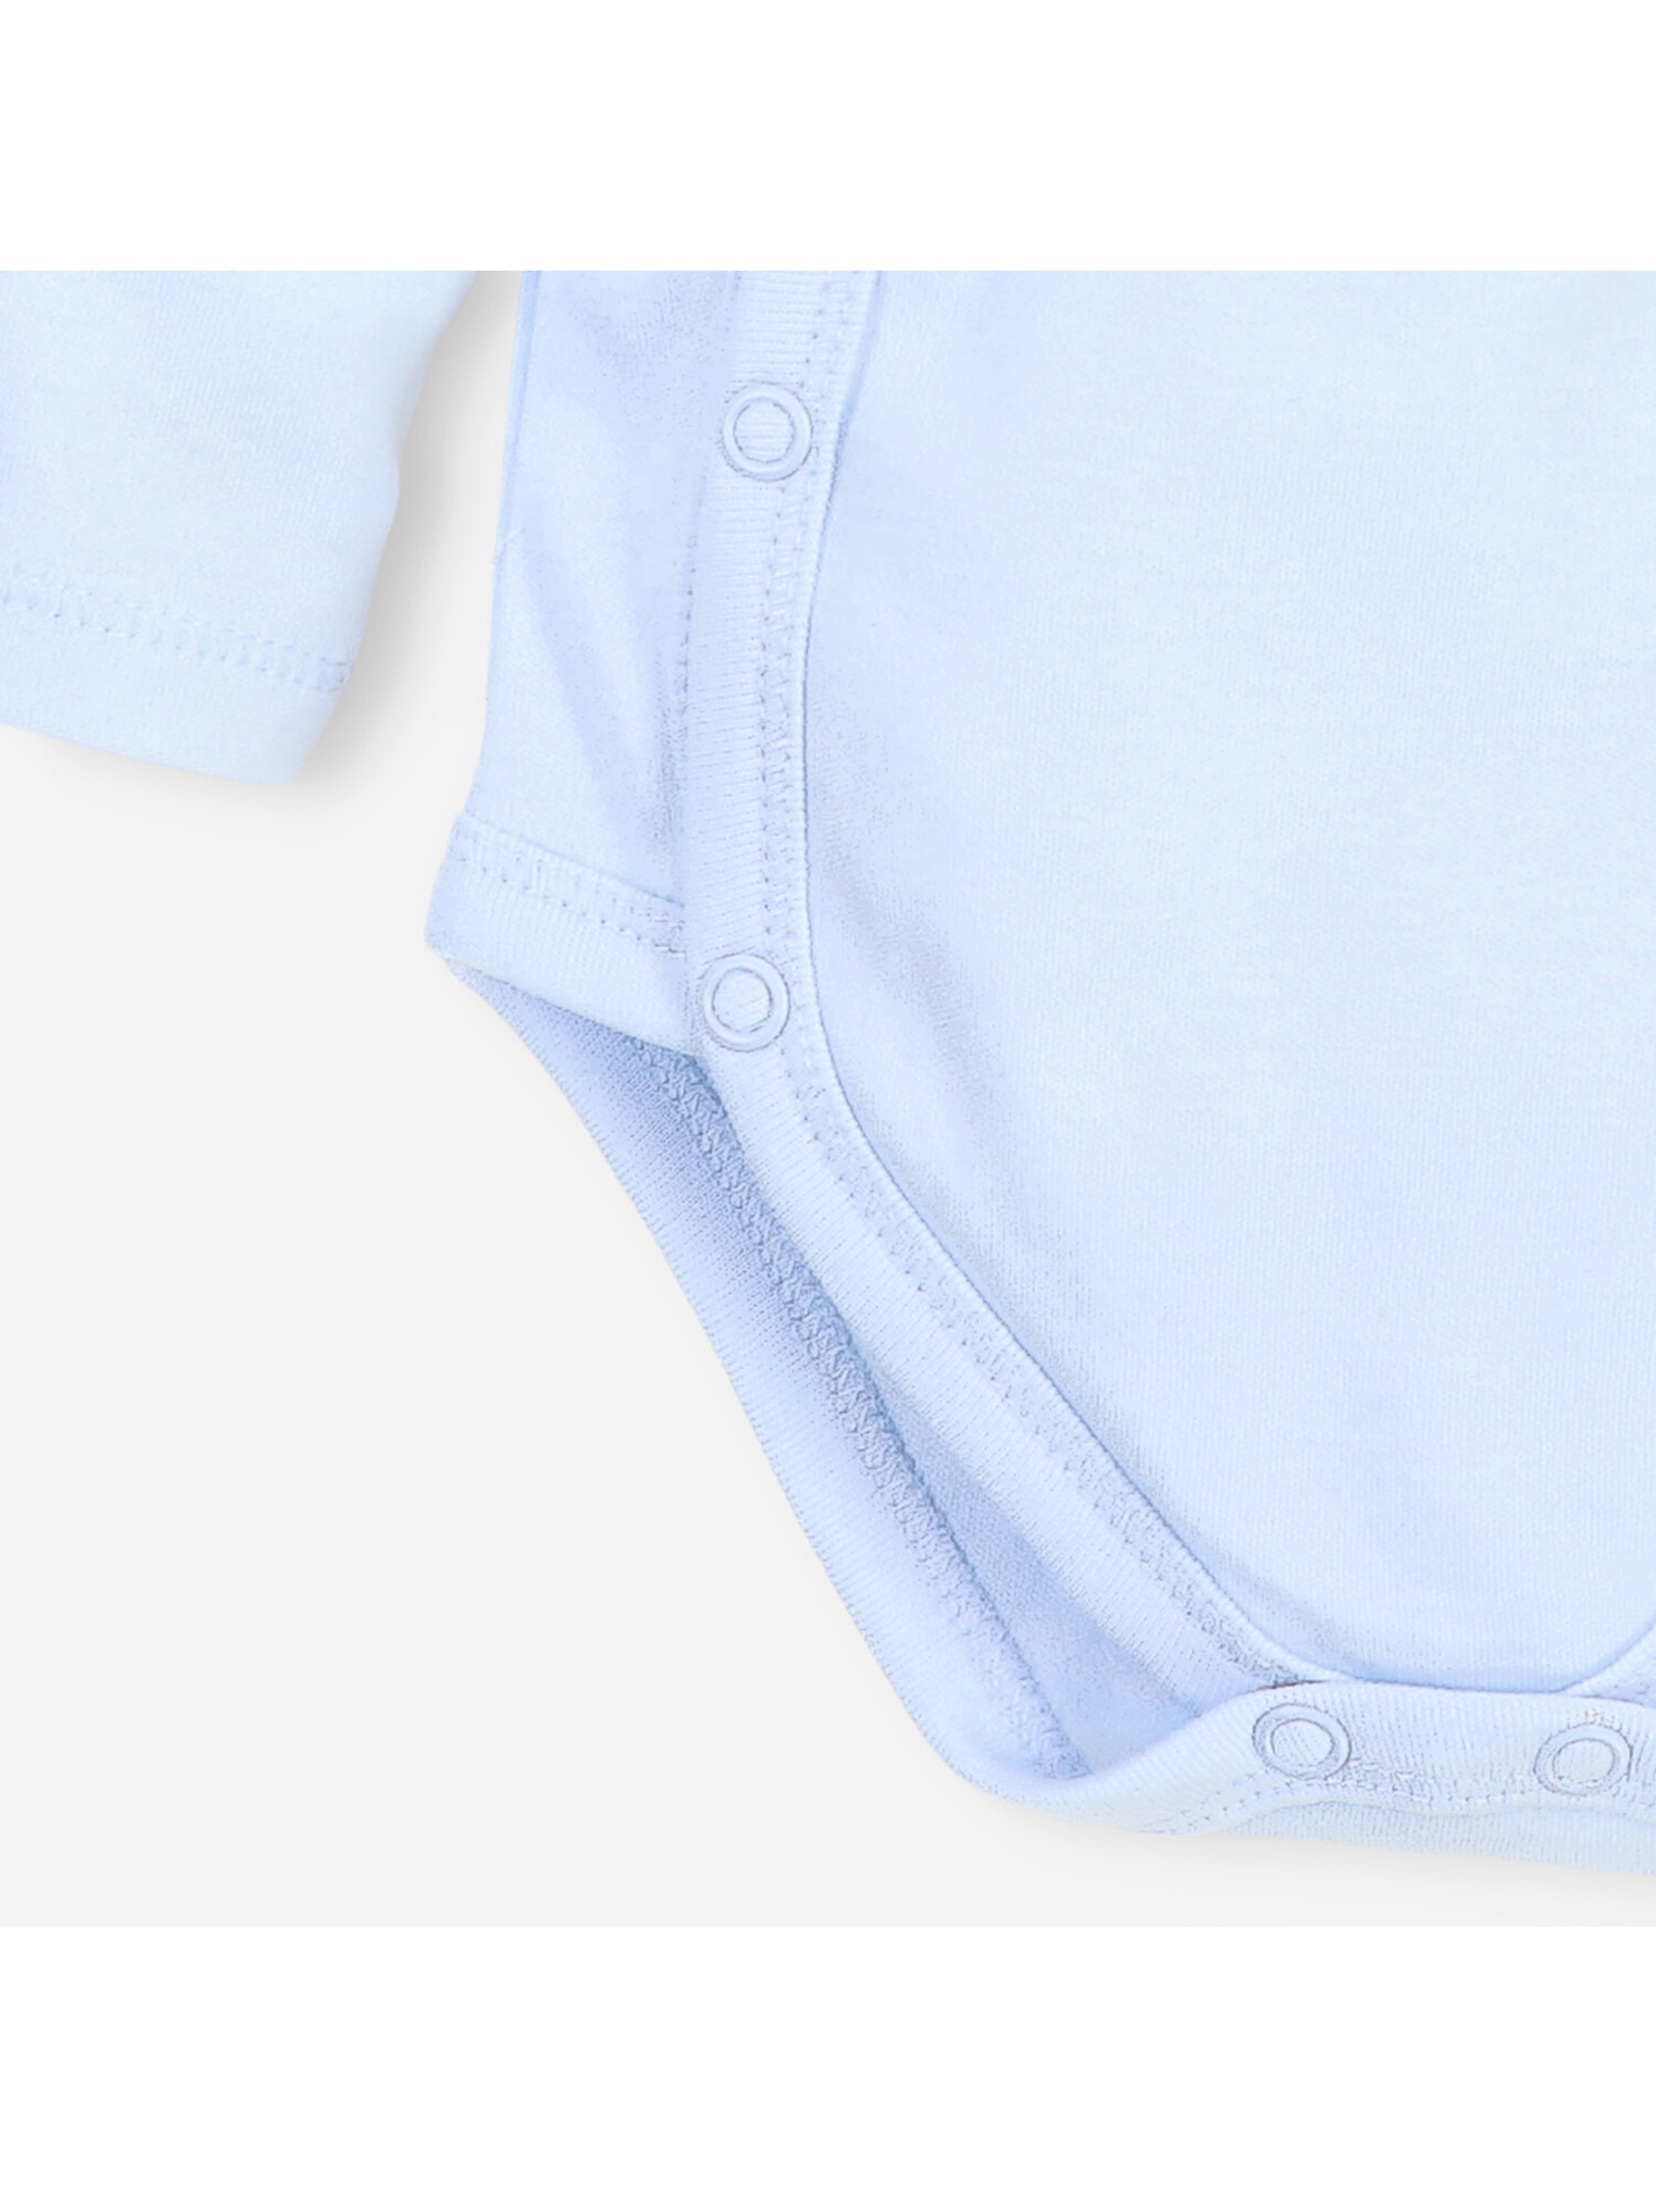 Body niemowlęce z bawełny organicznej - błękitne długi rękaw